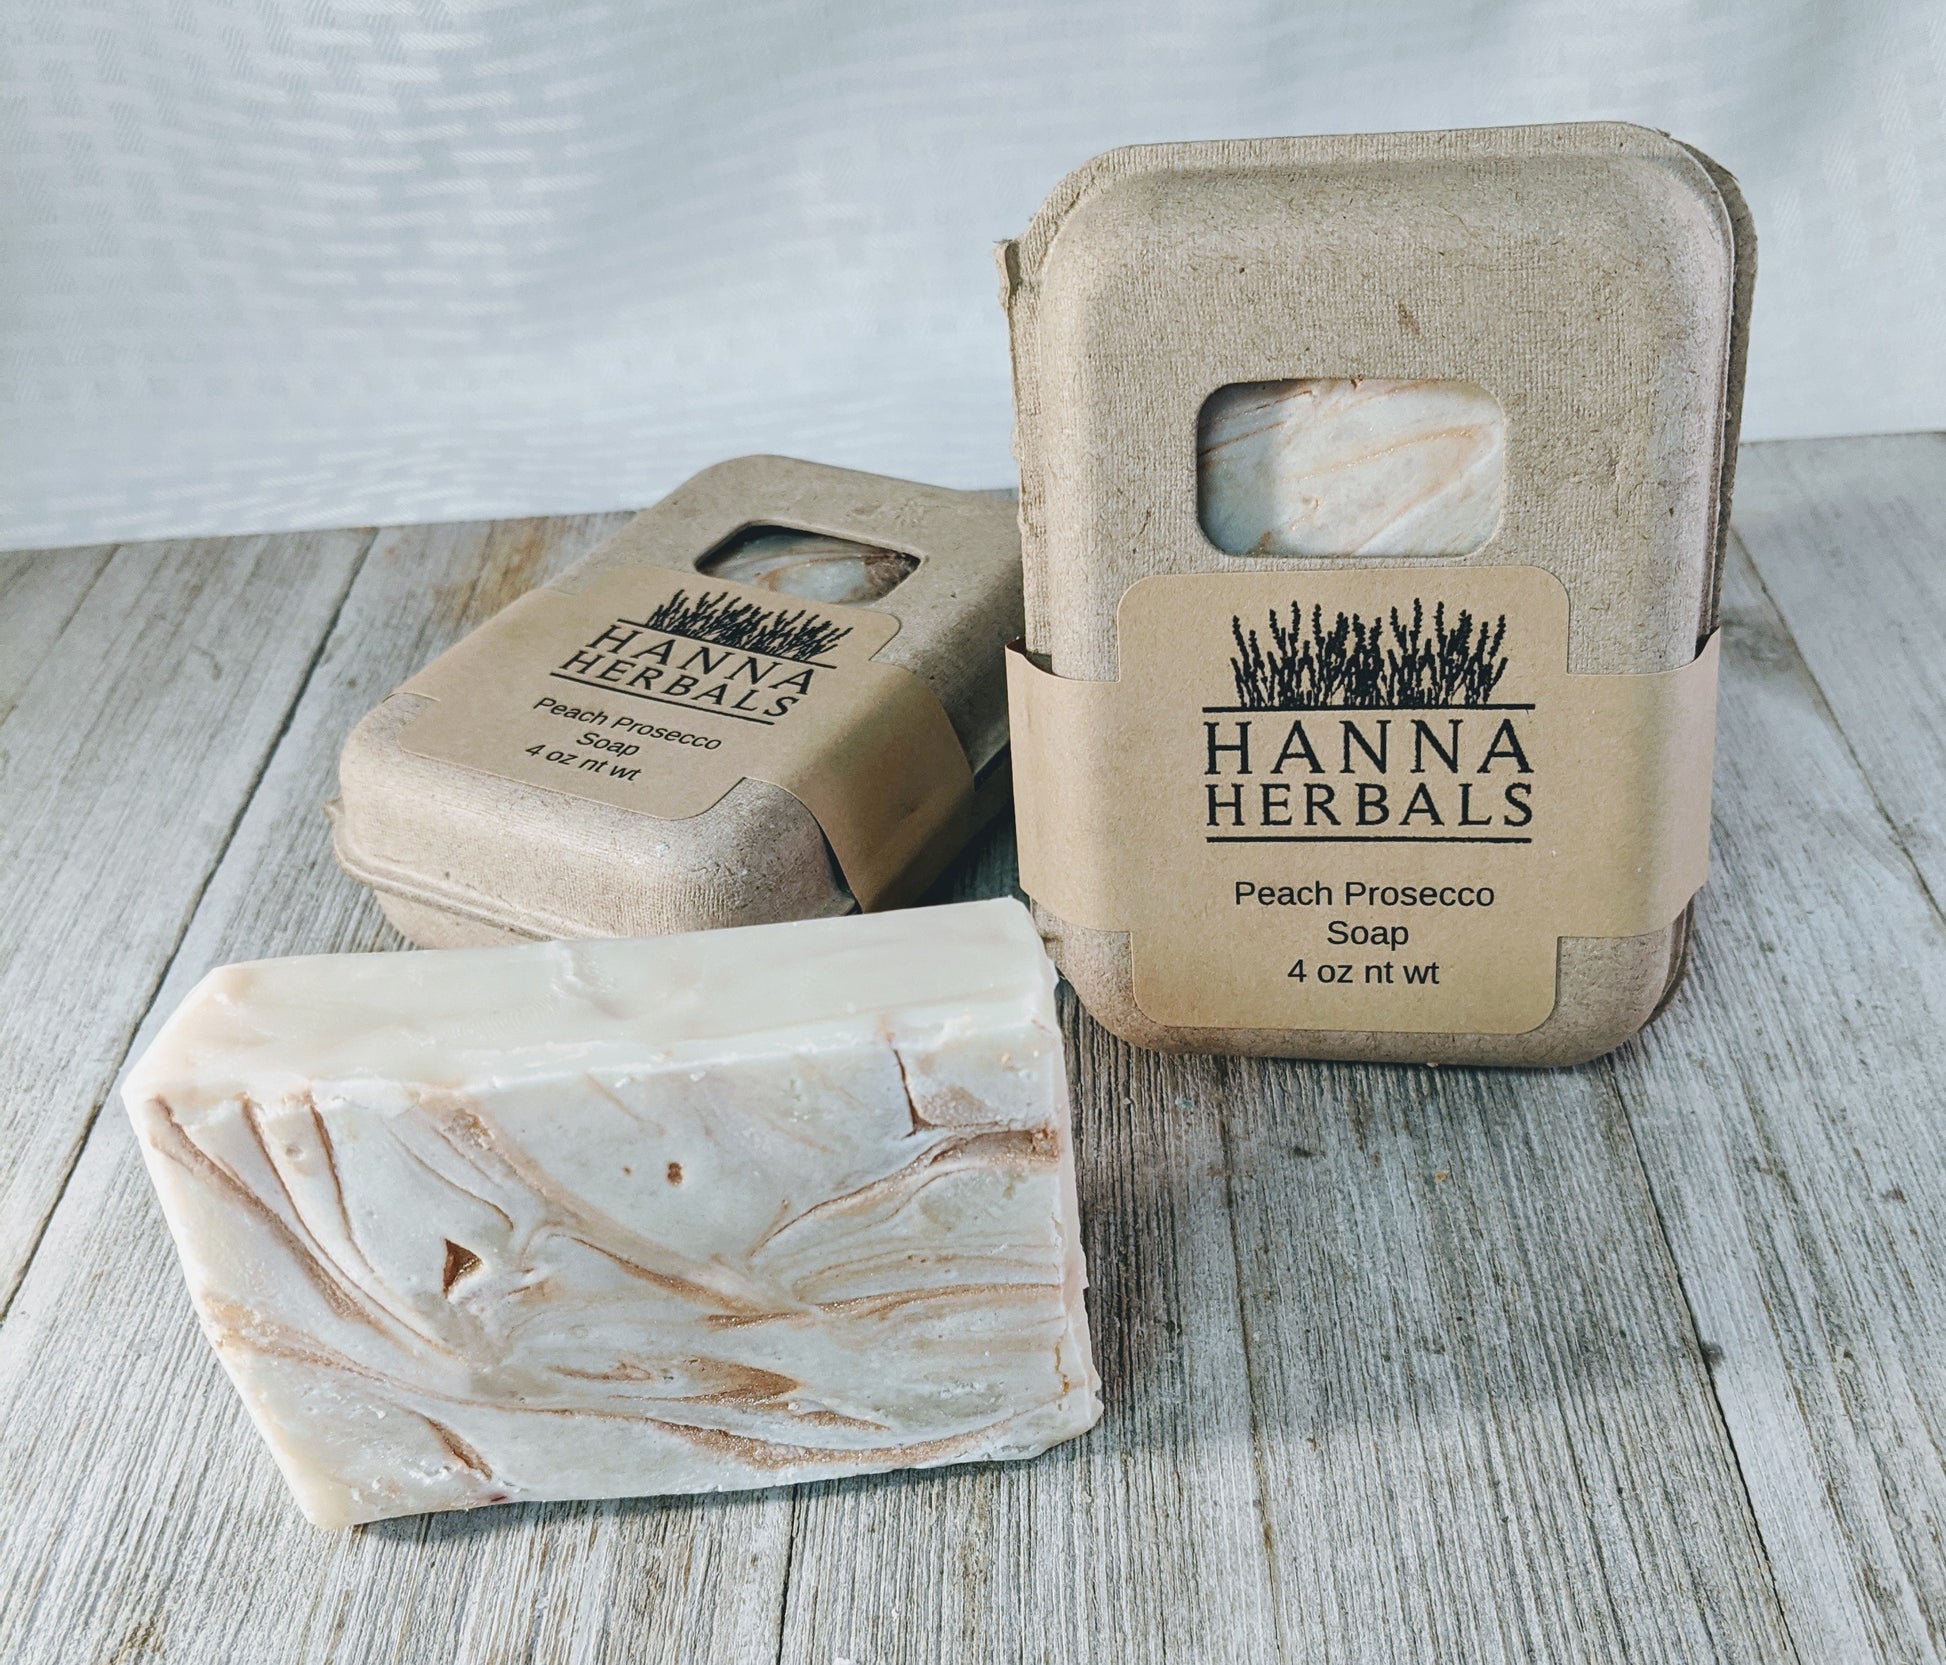 Peach Prosecco Soap - Hanna Herbals